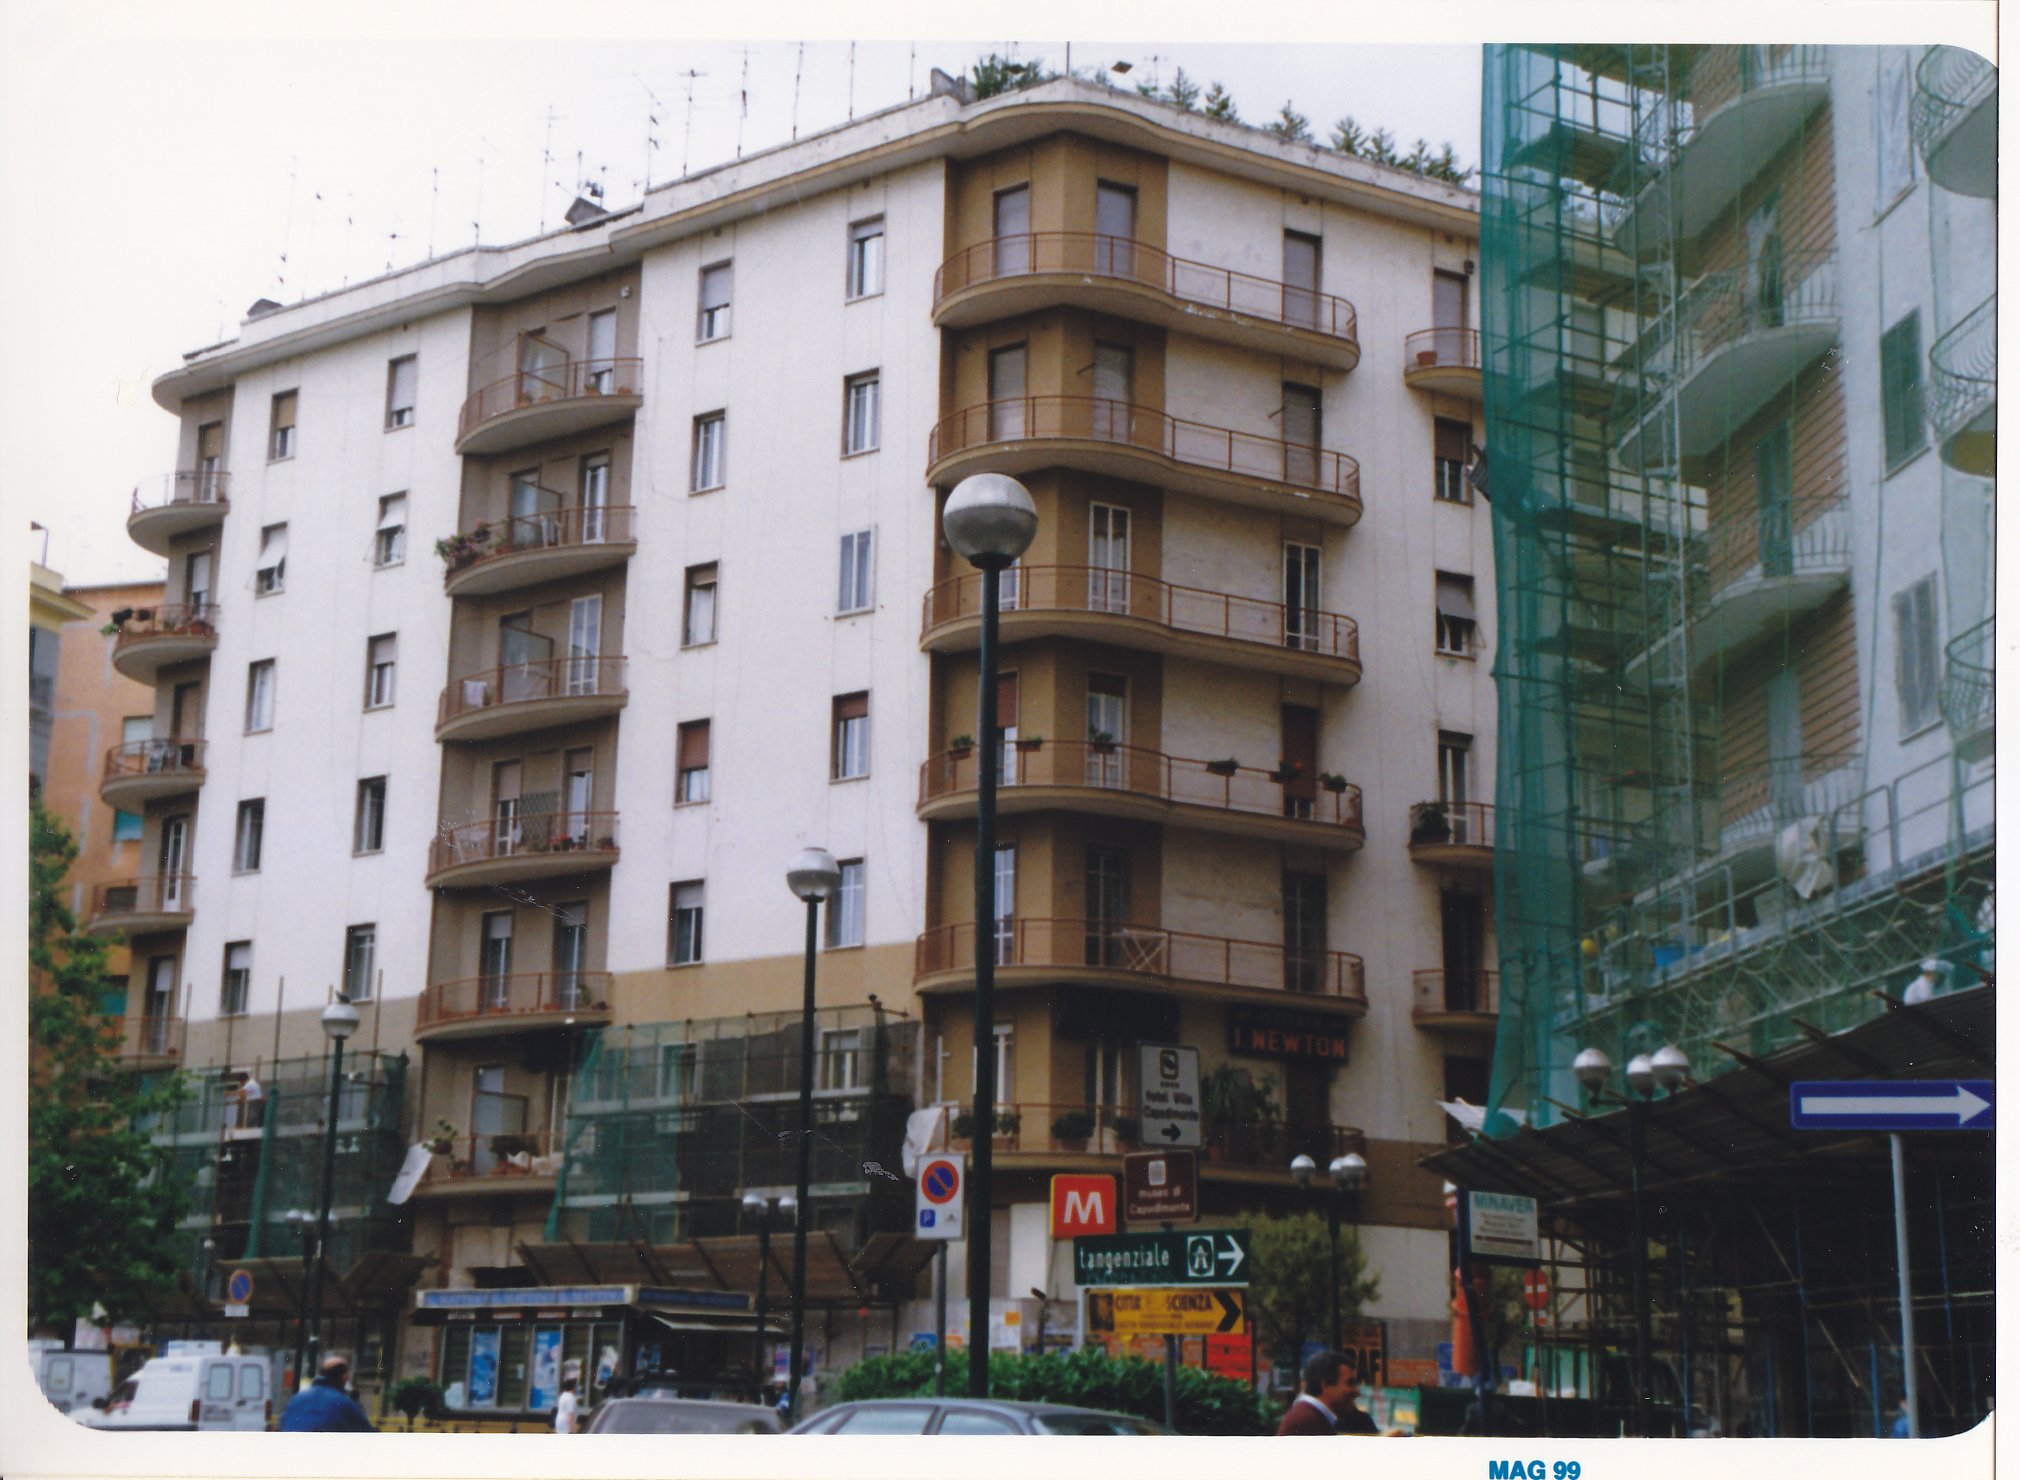 ignota - p.zza Medaglie D'Oro, 15 (palazzo, residenziale) - Napoli (NA) 